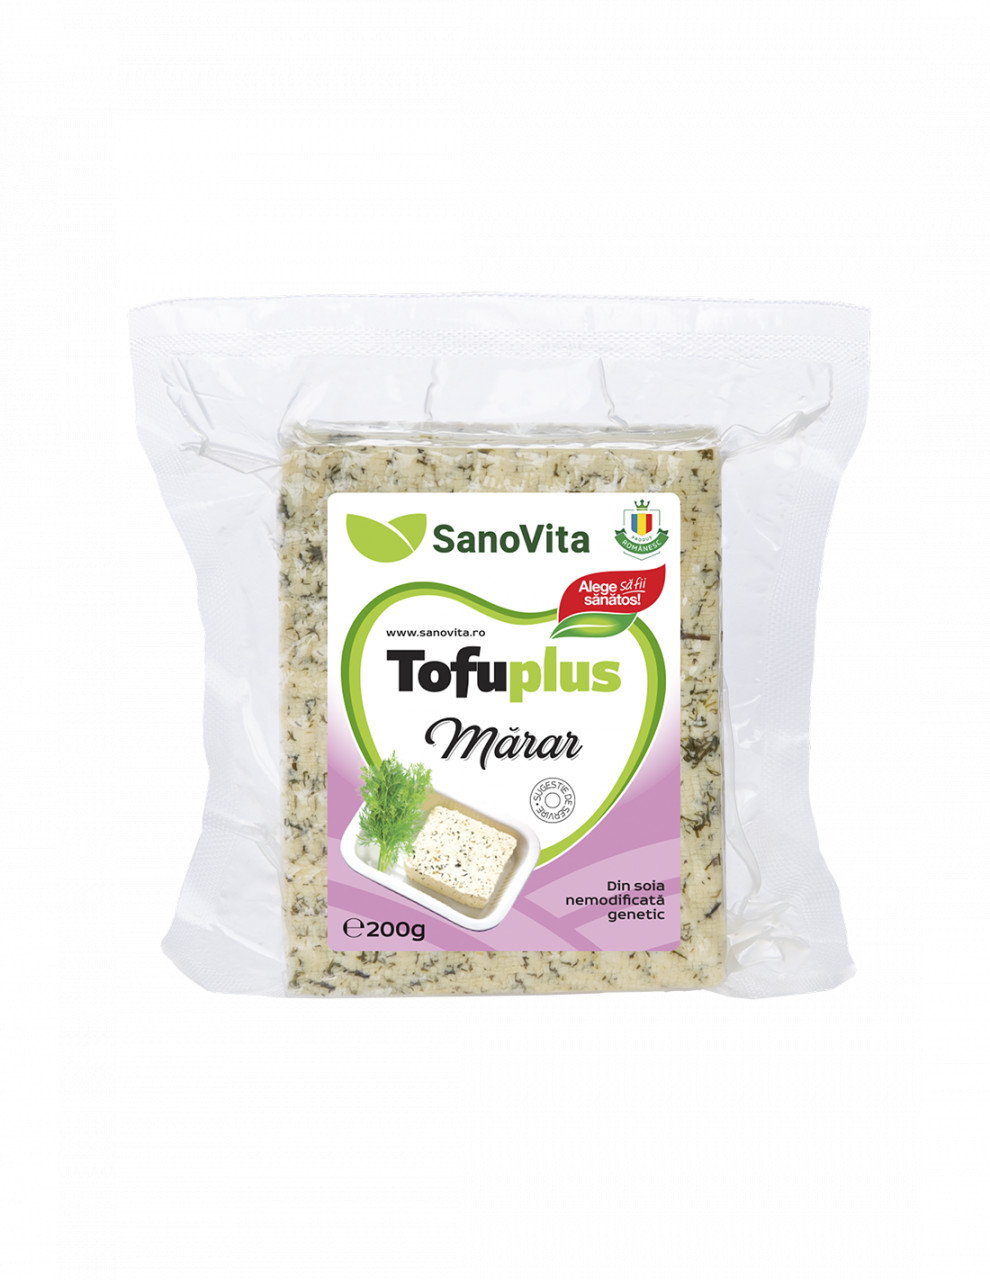 Tofuplus cu marar - 200 g